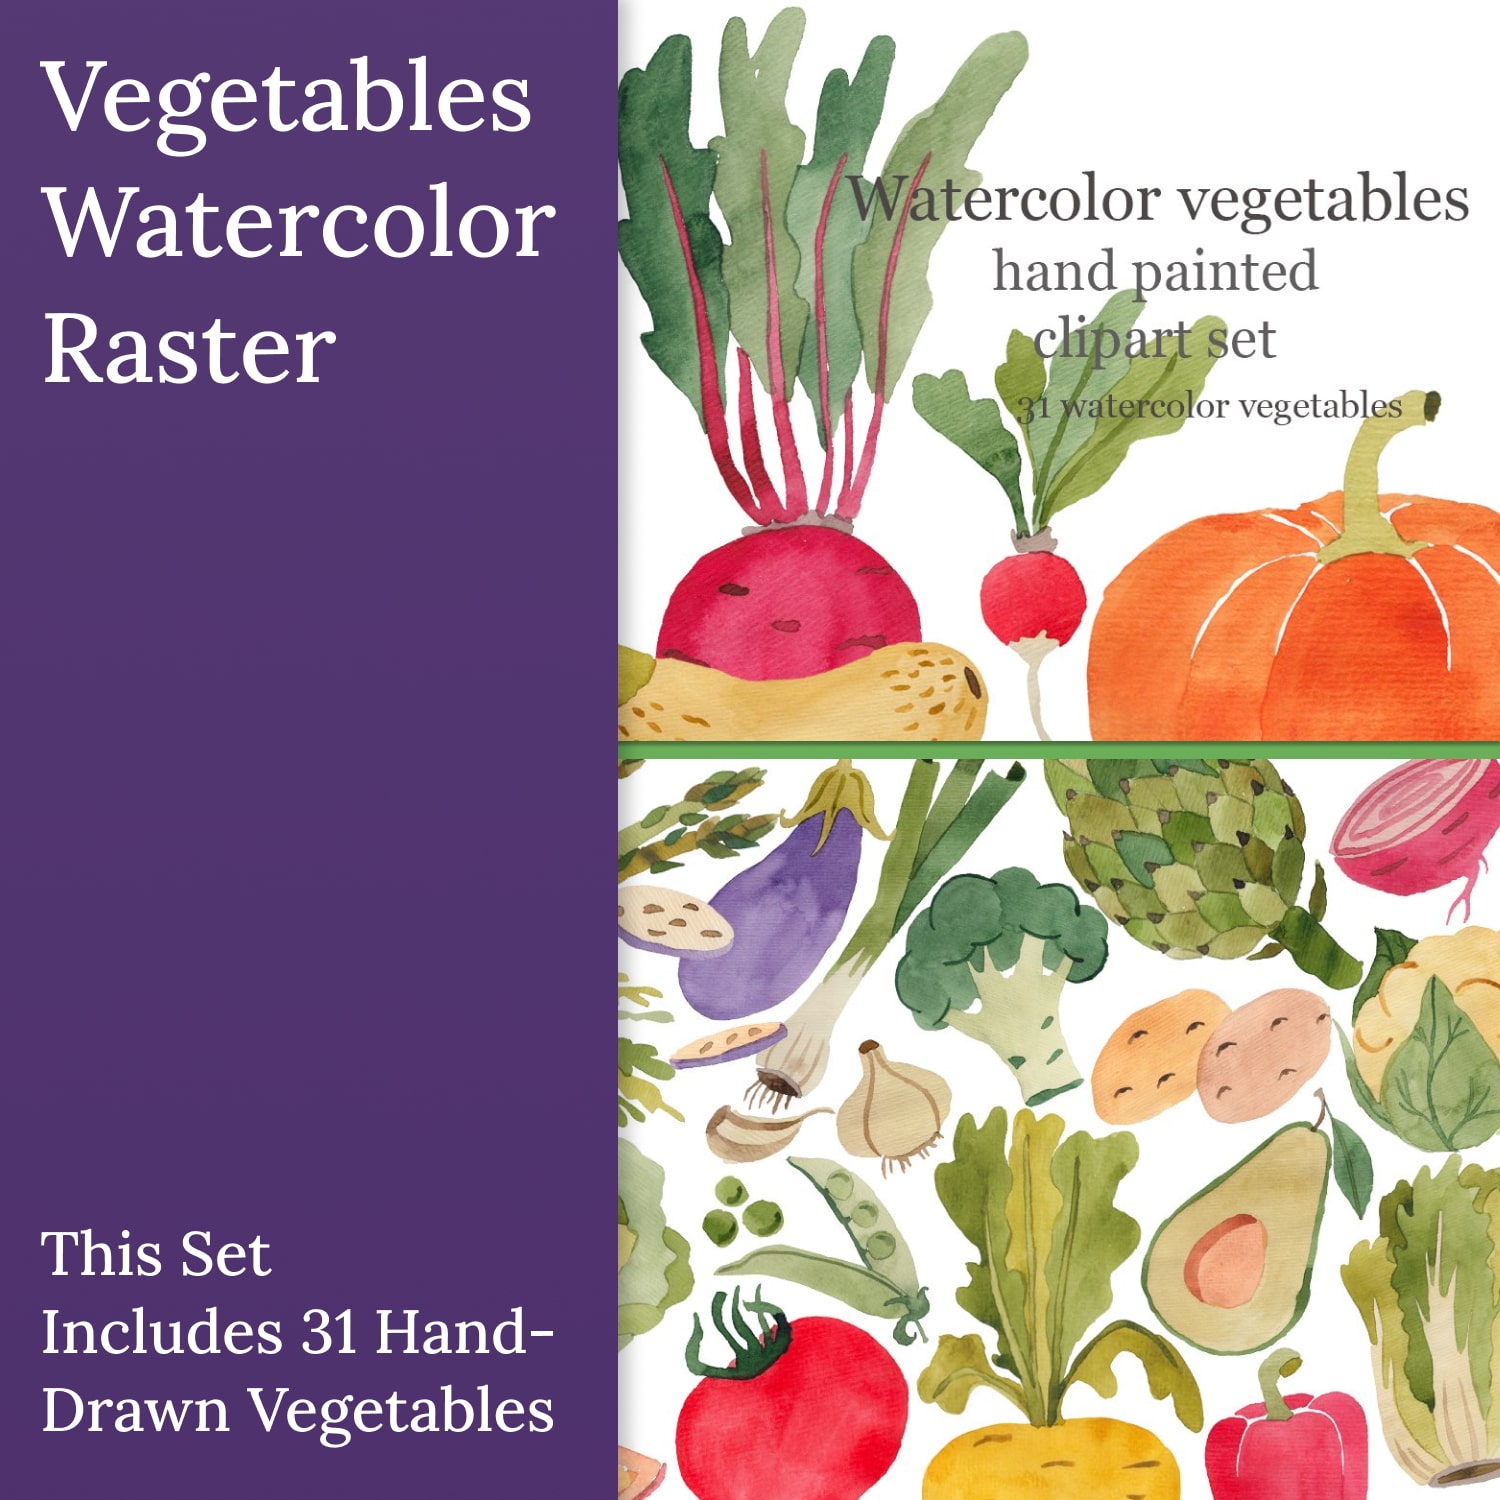 Vegetables watercolor, raster.